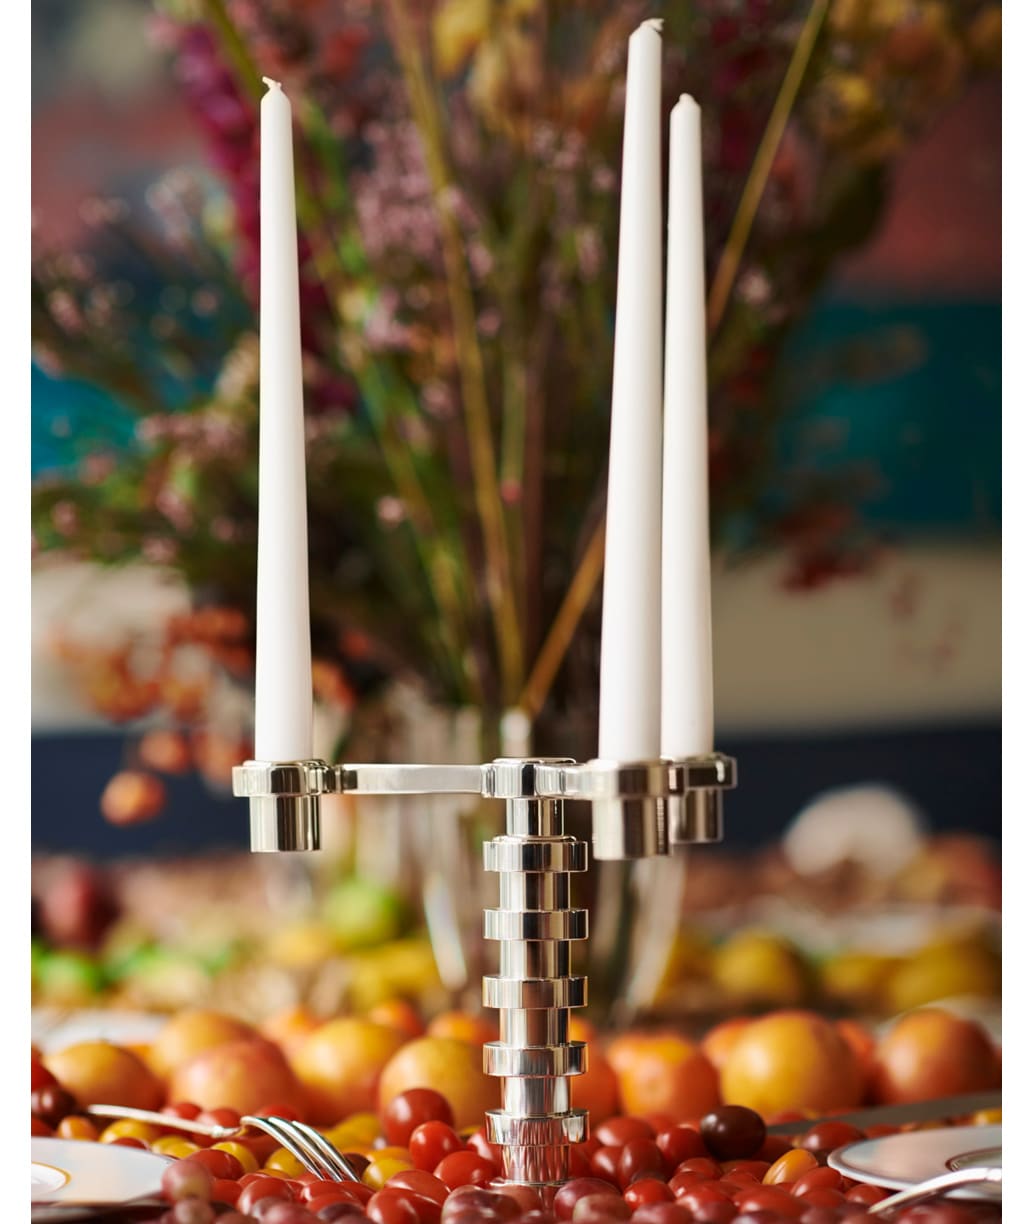 Candélabre 3 lumières en métal argenté de la collection Ruban de Puiforcat, sur une table dressée de fruits et bouquet